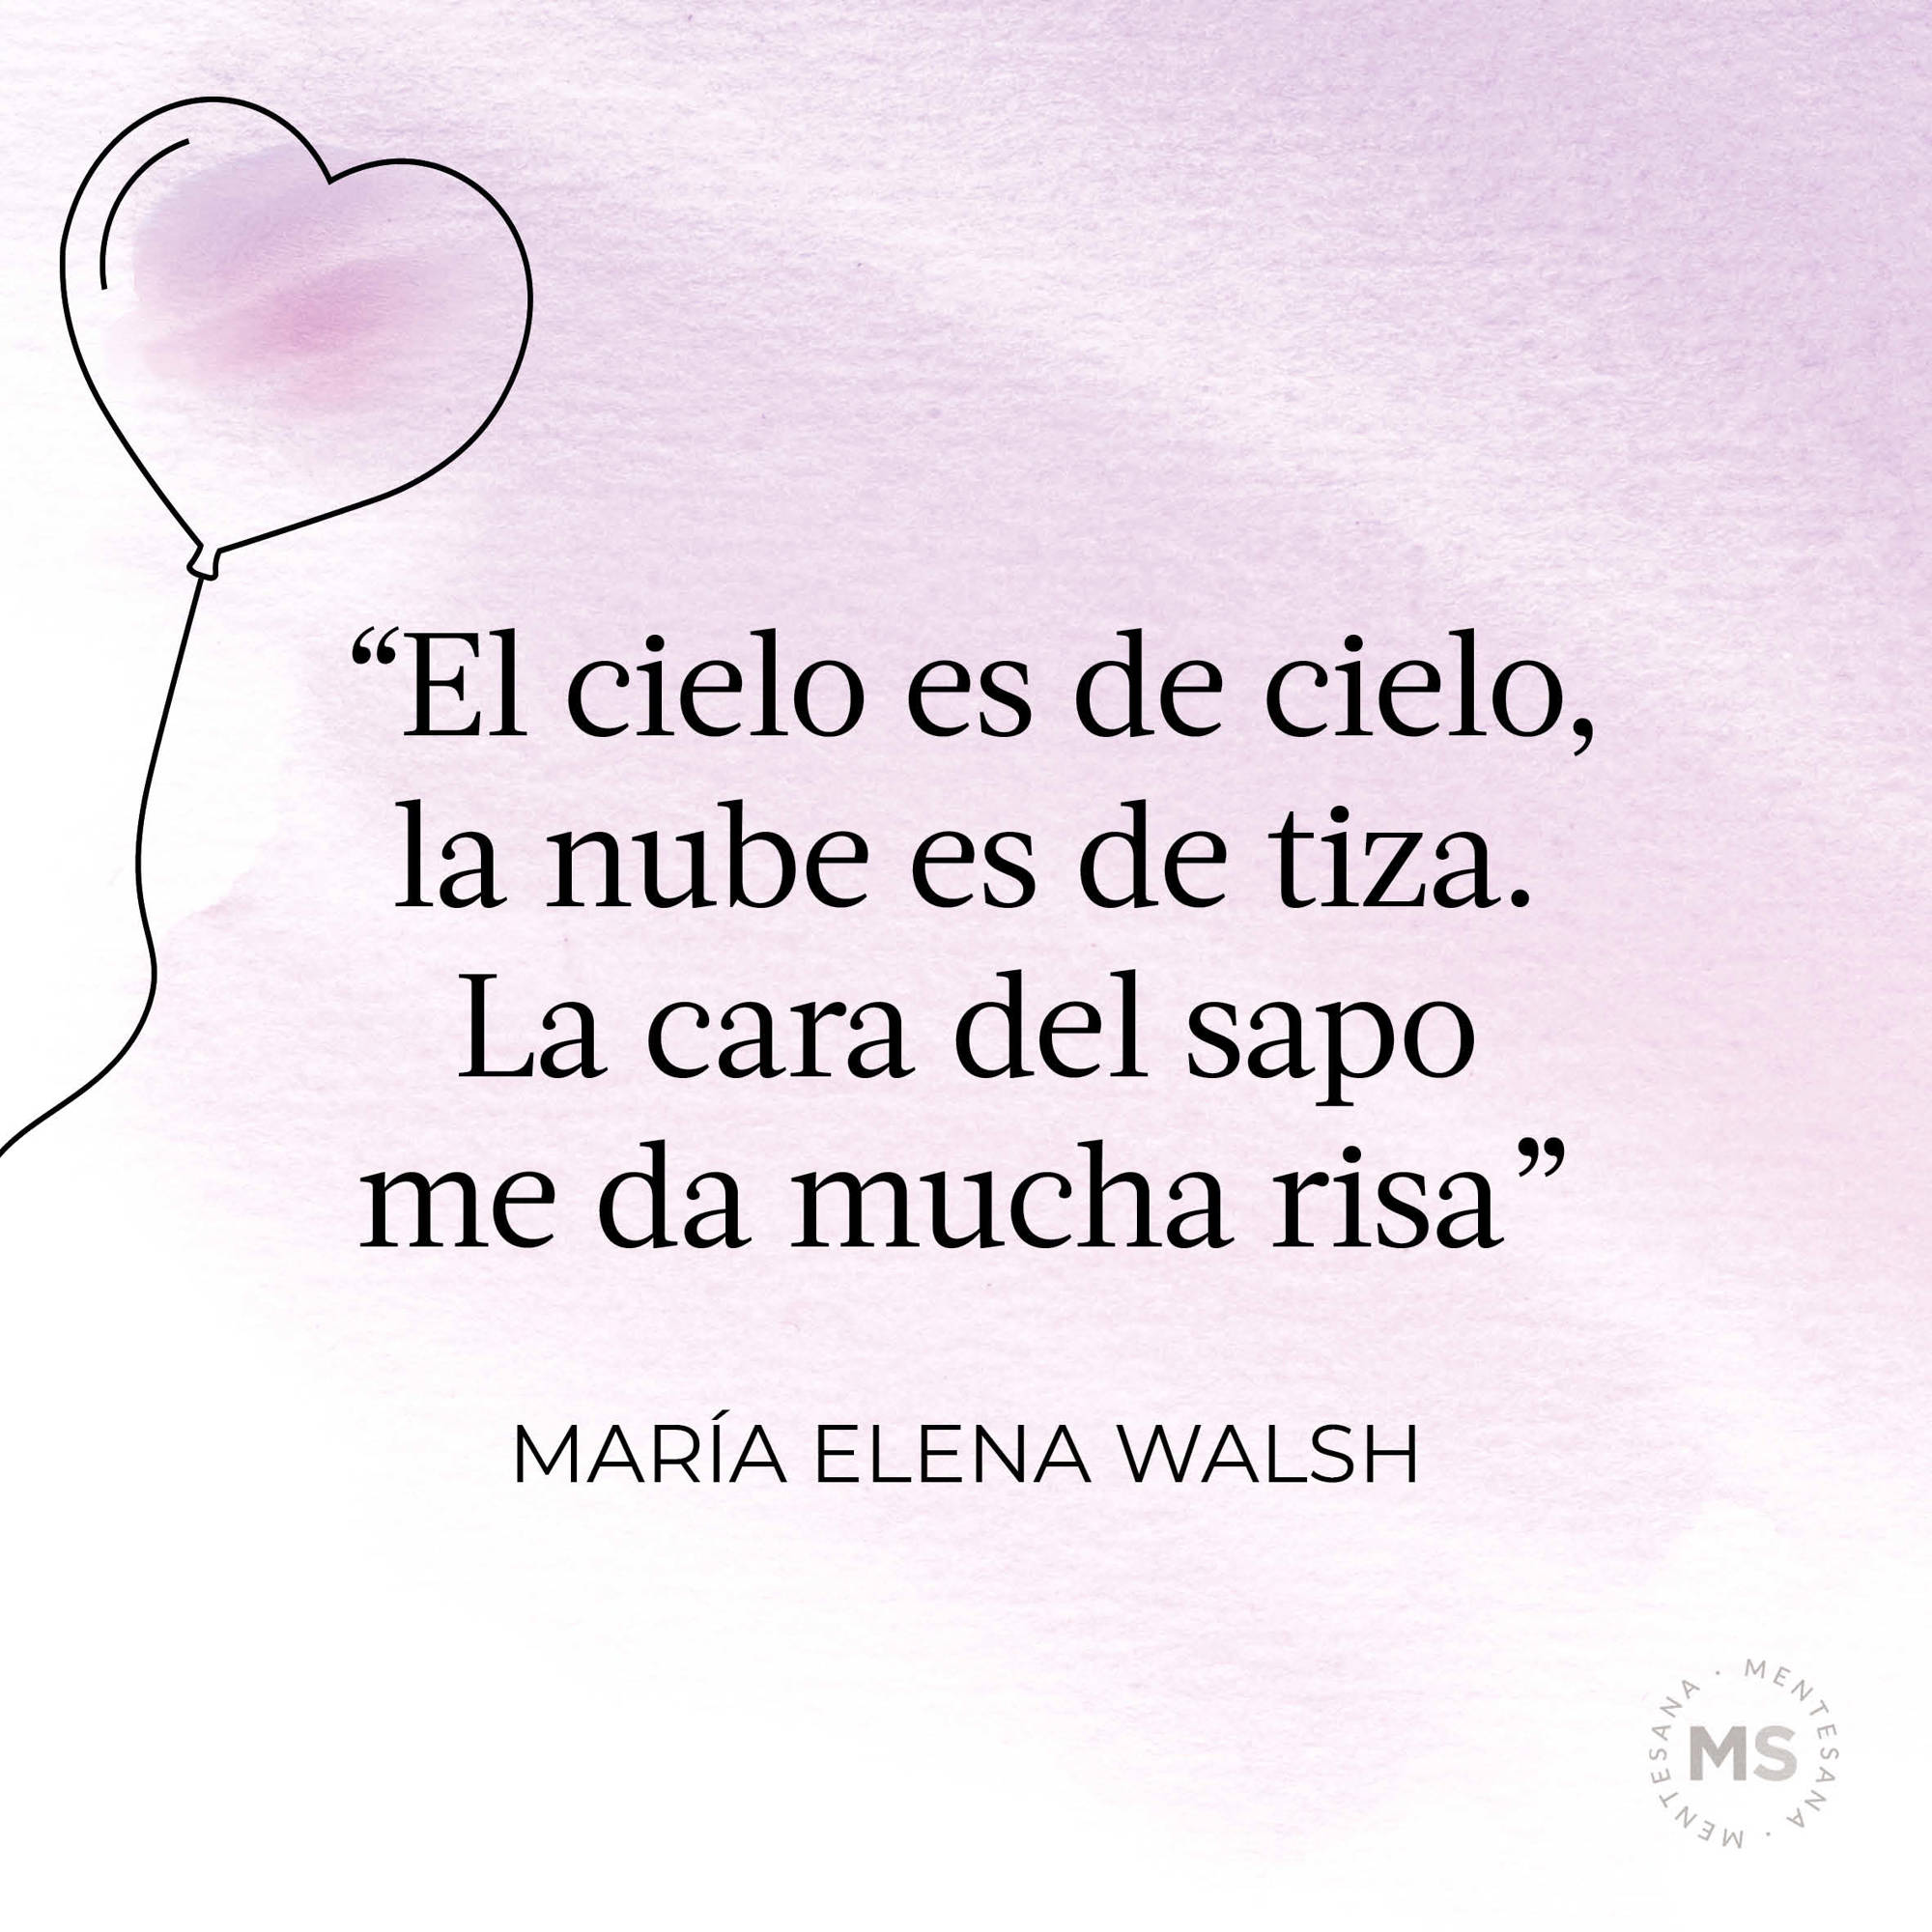 Así es (poema de María Elena Walsh)